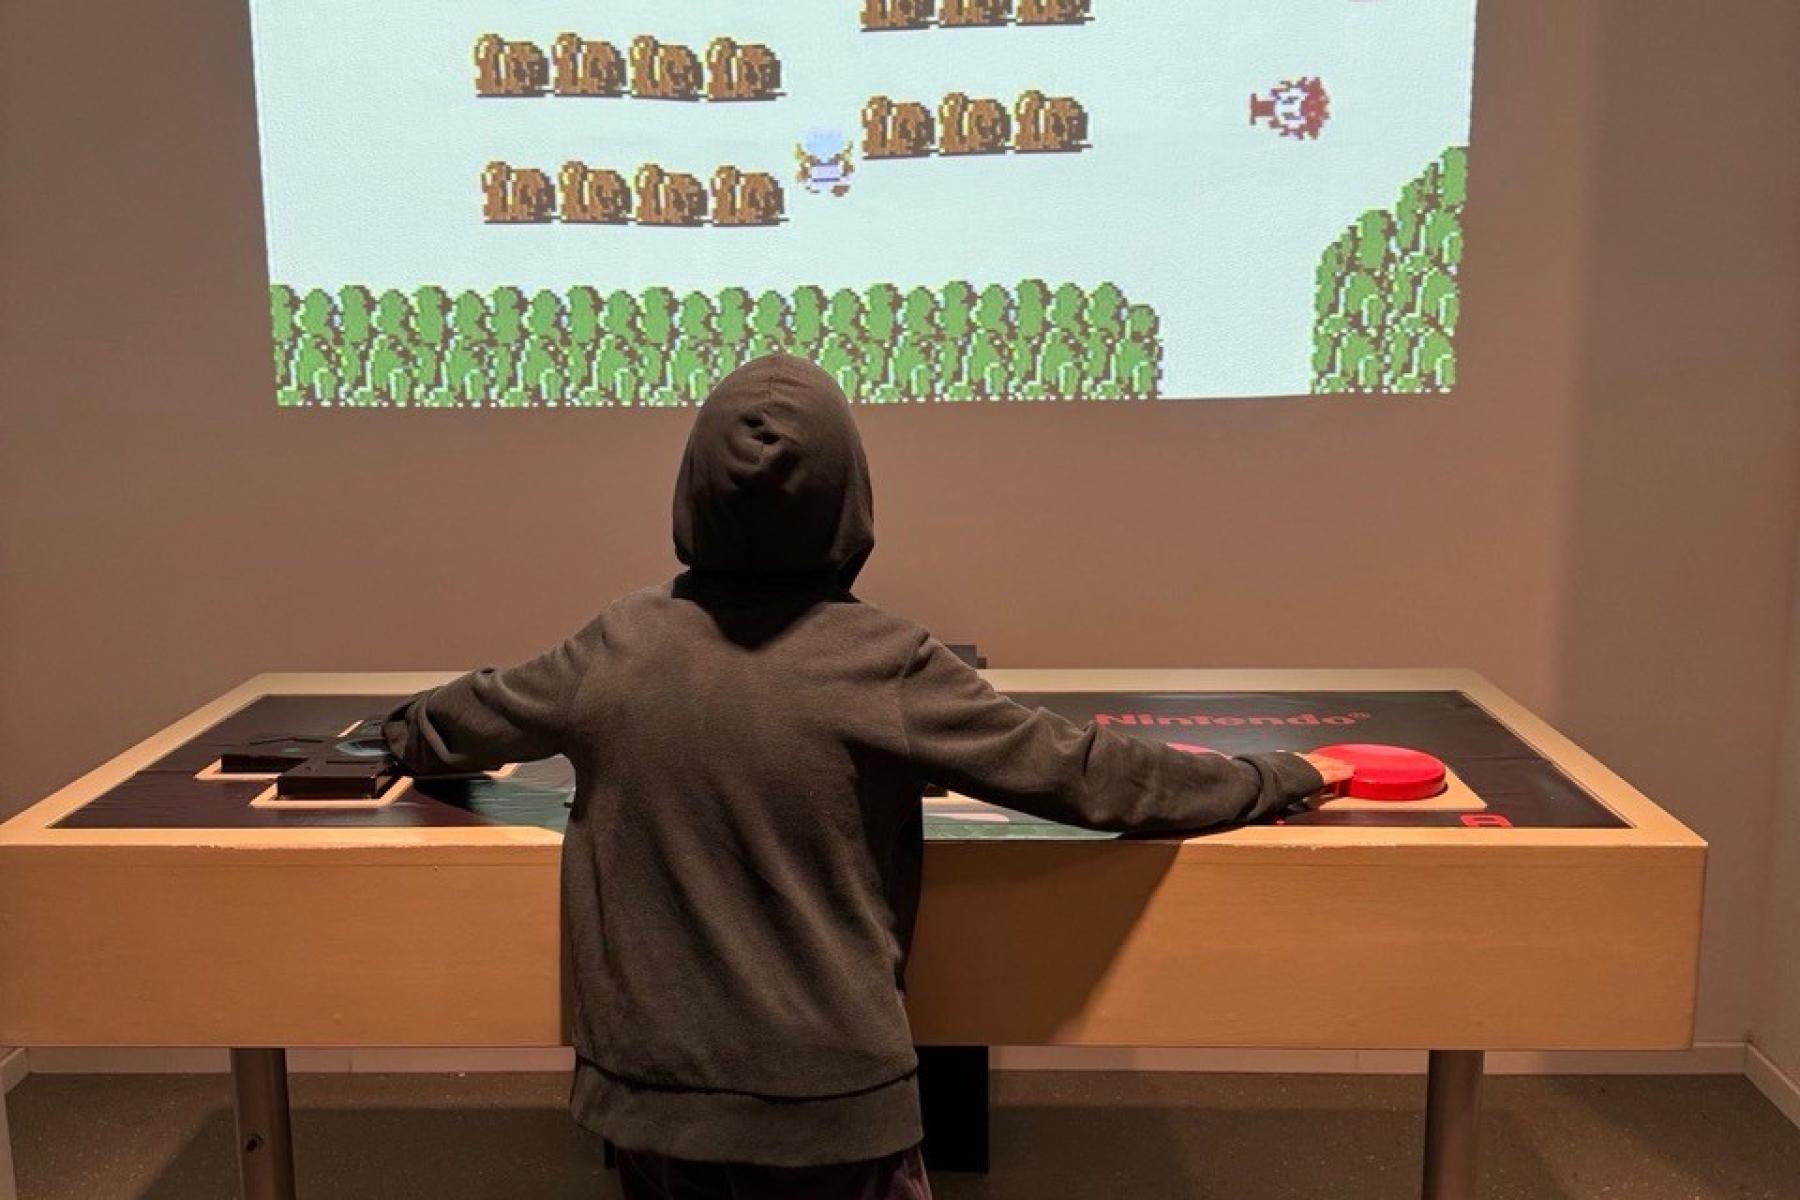 Kind vor einem gaming-Screen an der Wand